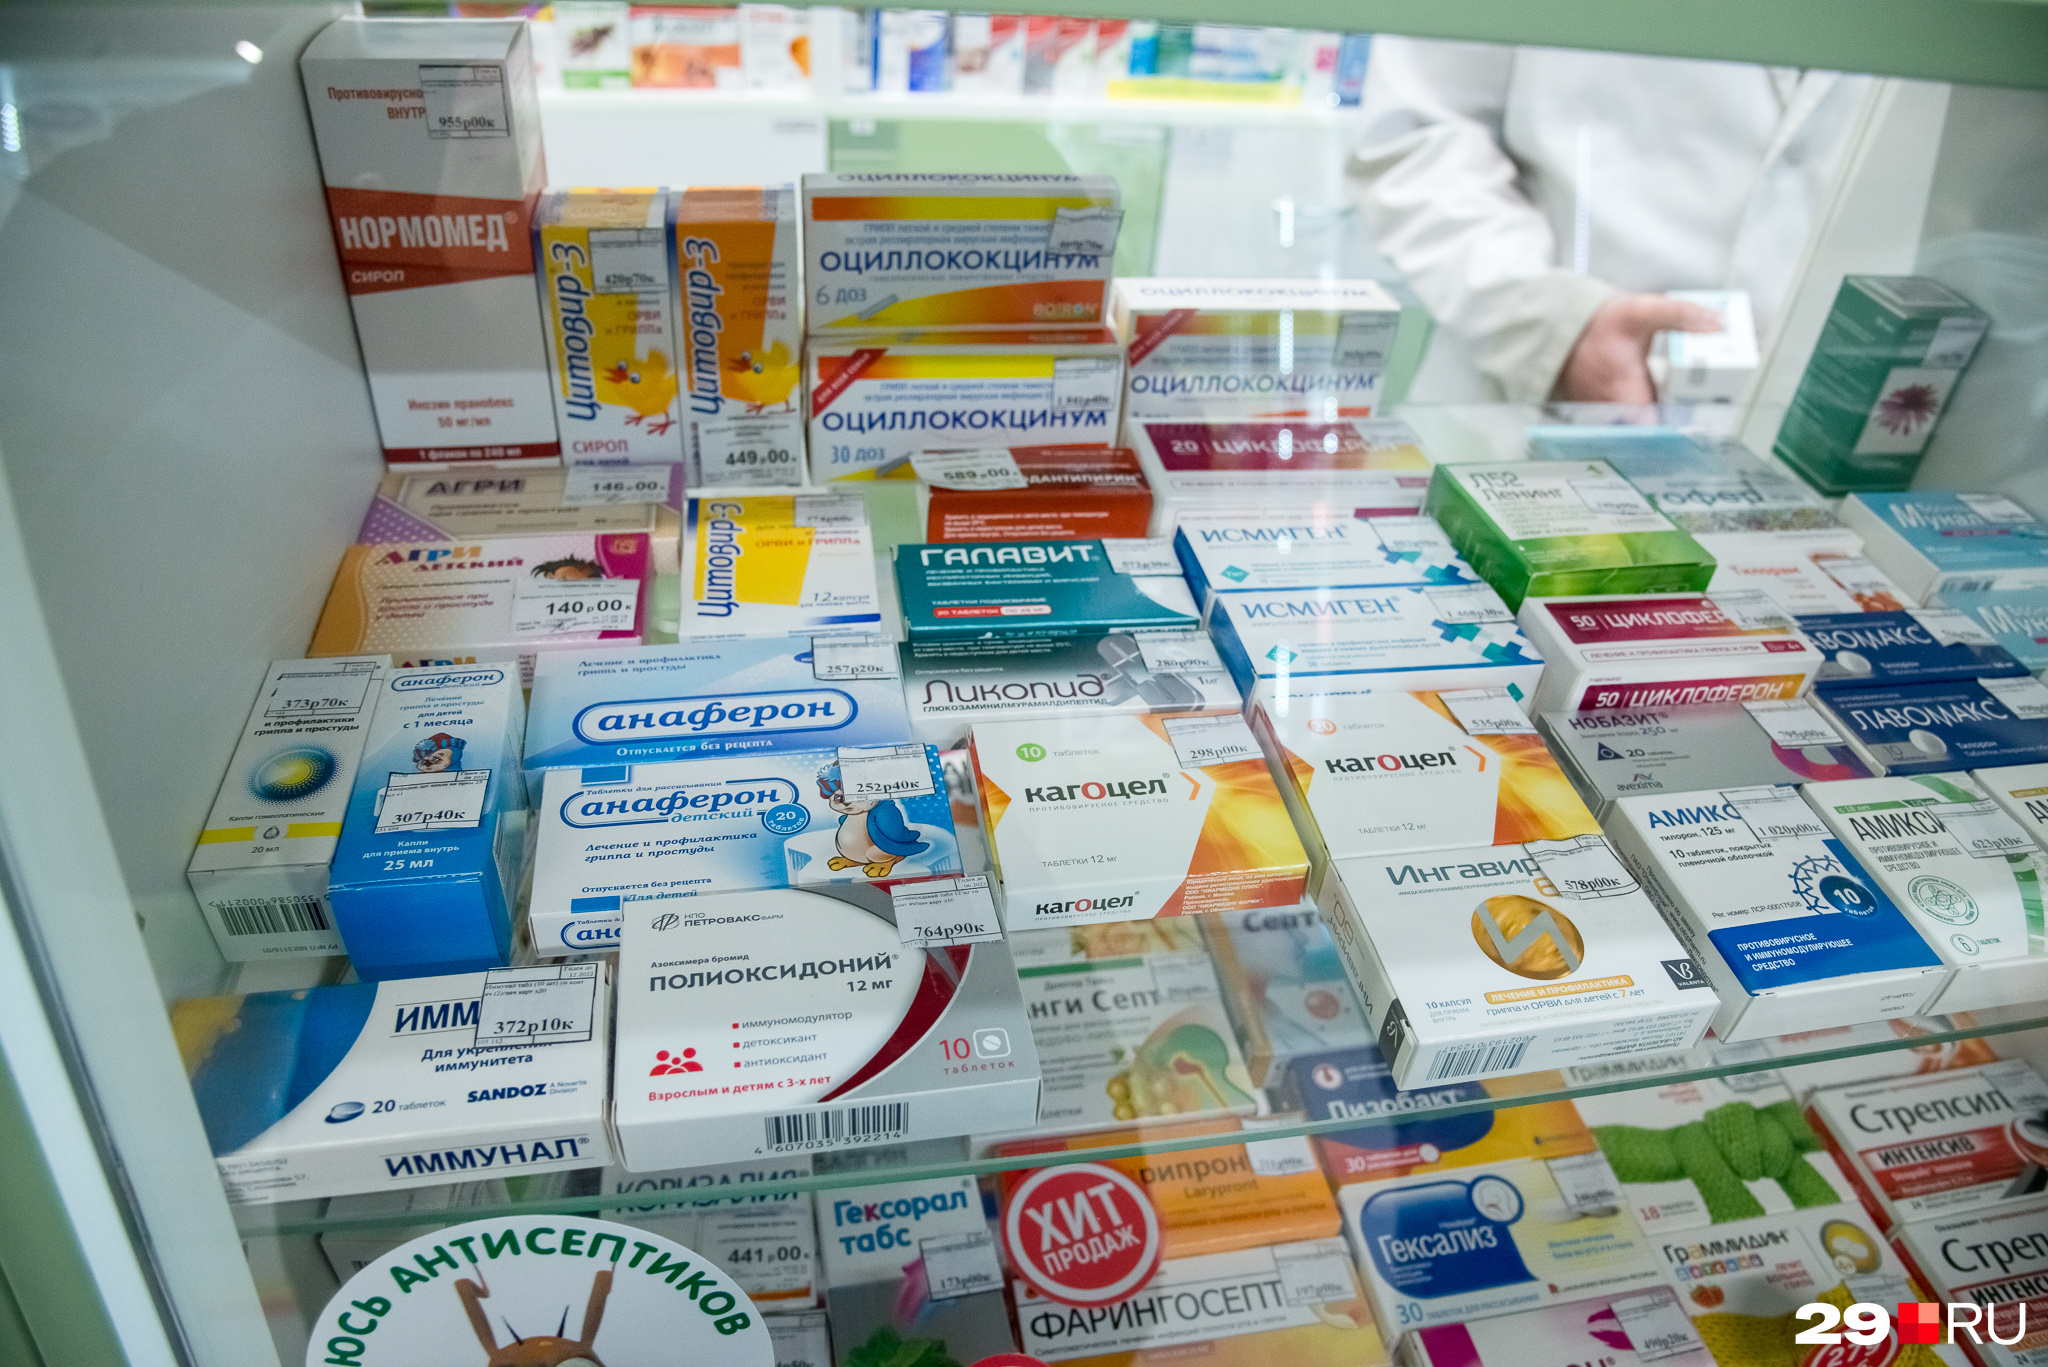 В аптеке перестали продавать лекарства именно в тот момент, когда все начали заболевать ковидом